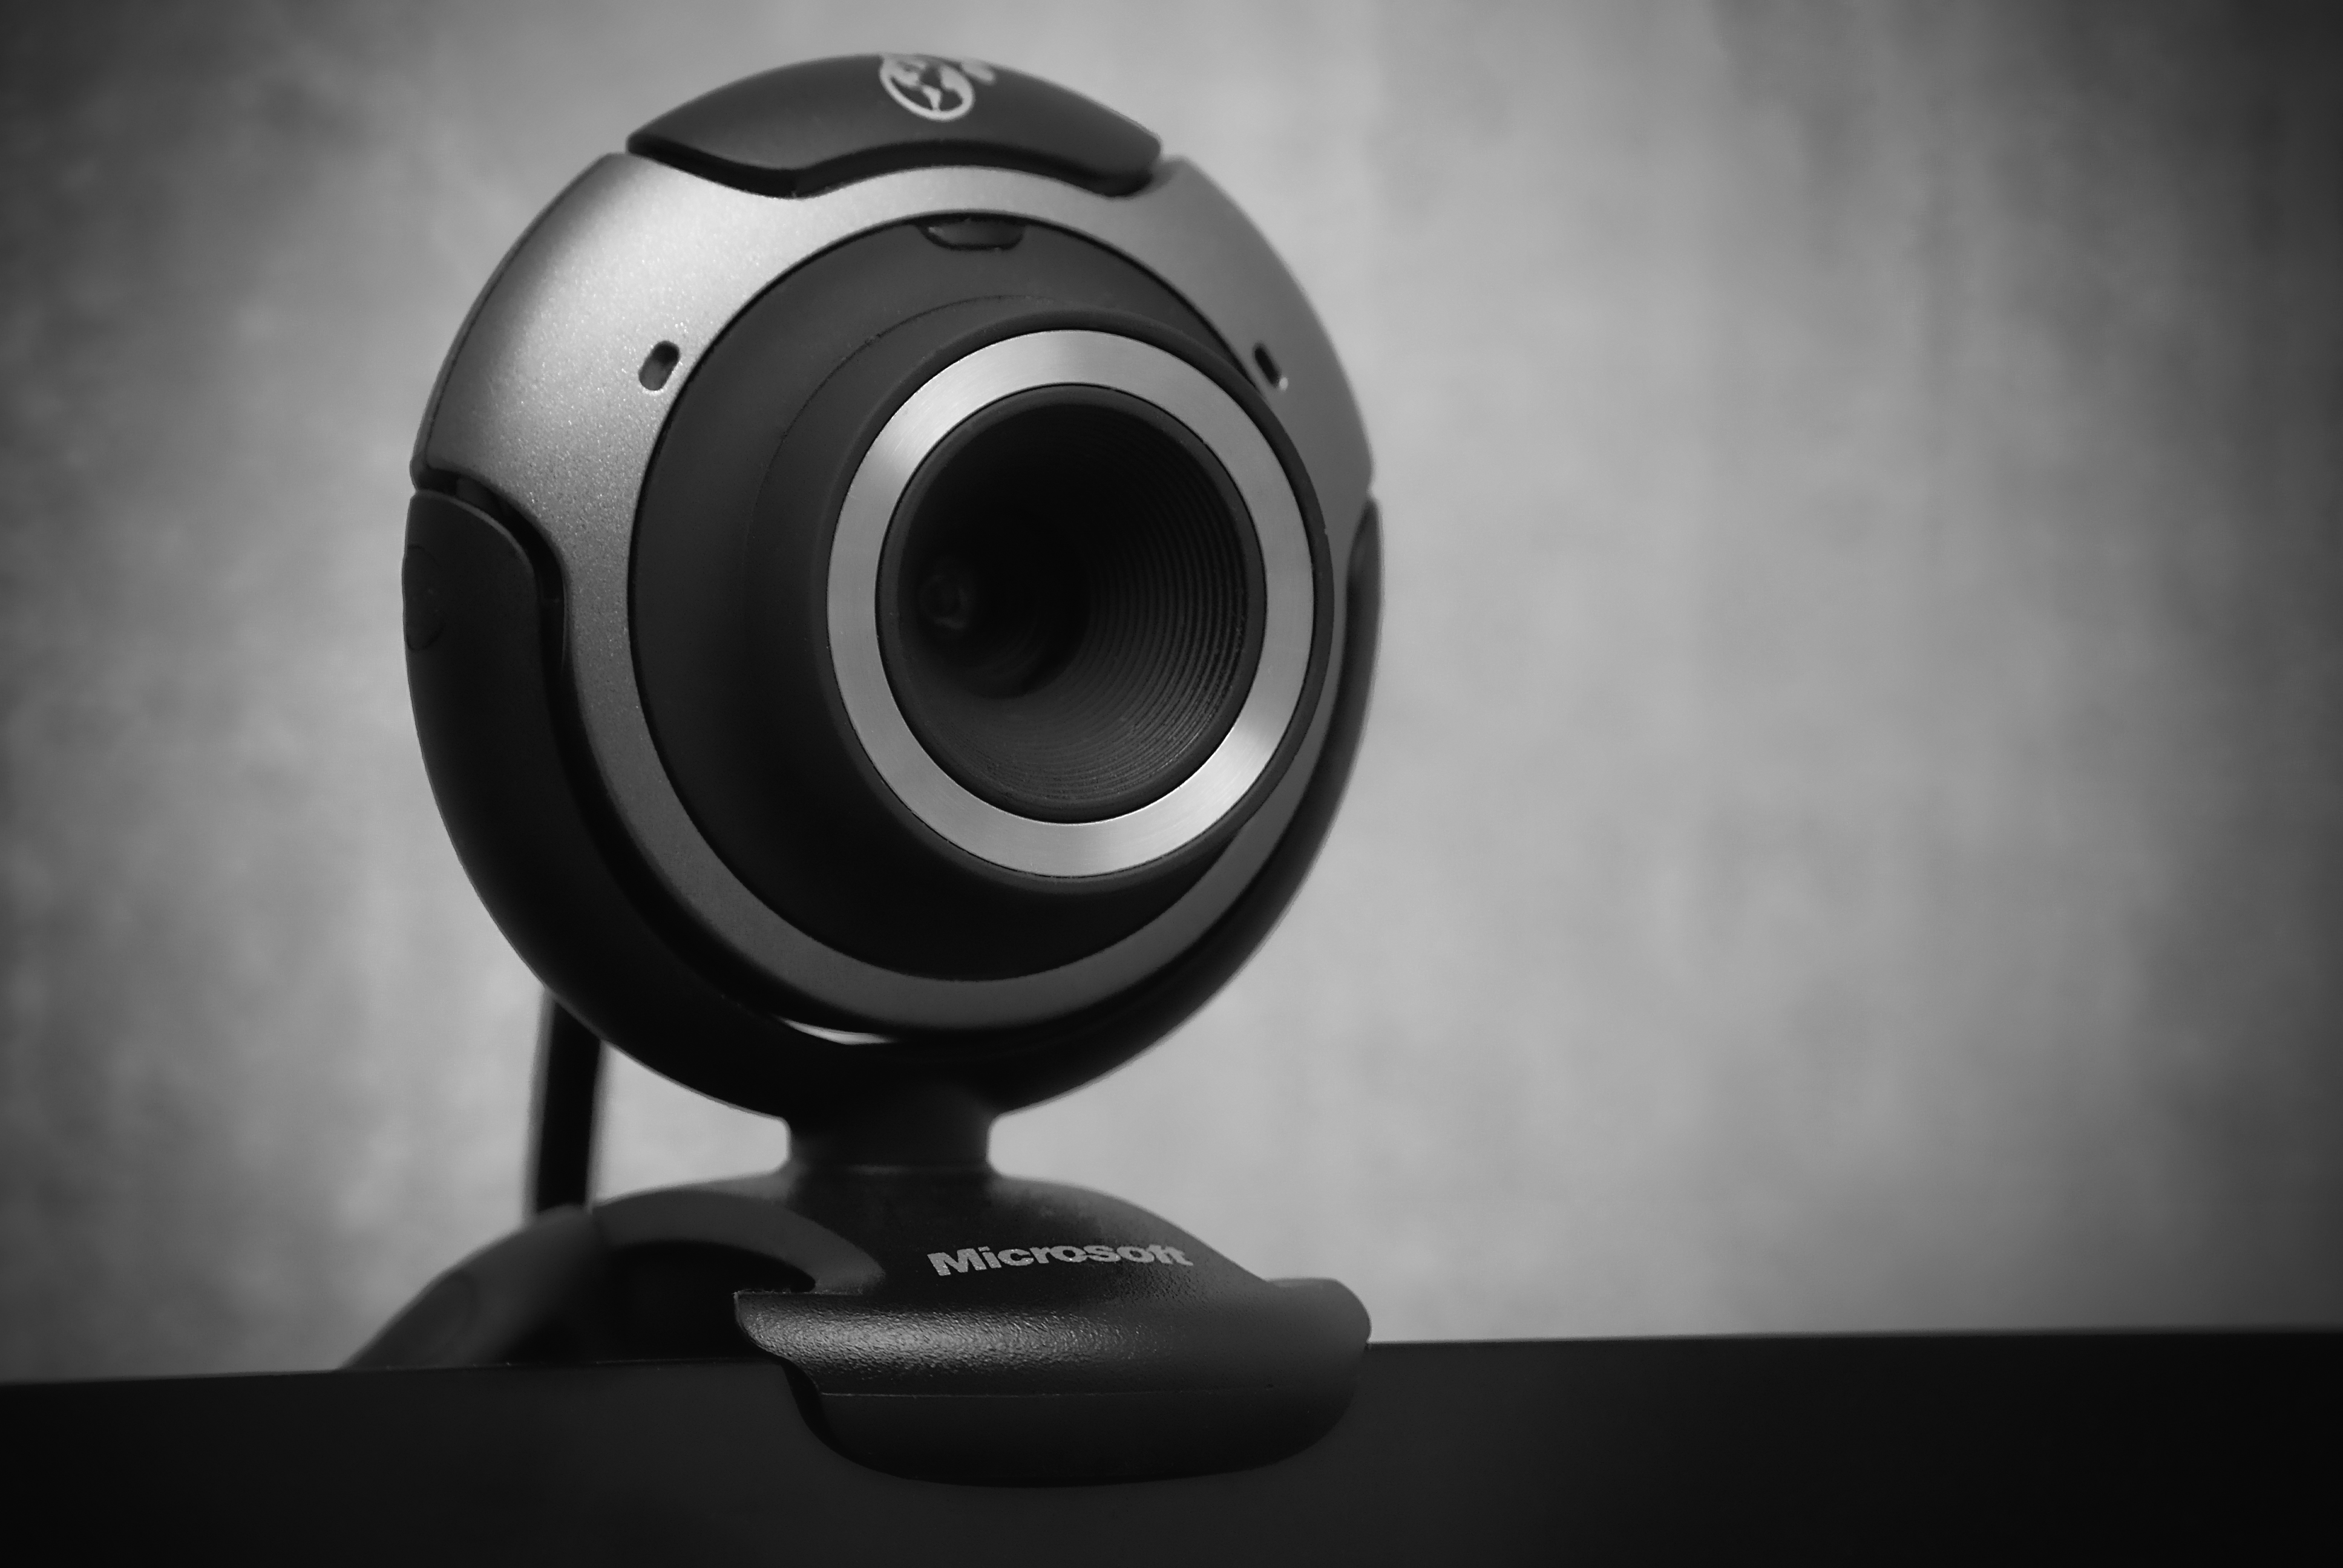 Webcam (Asim18 / CC BY-SA)